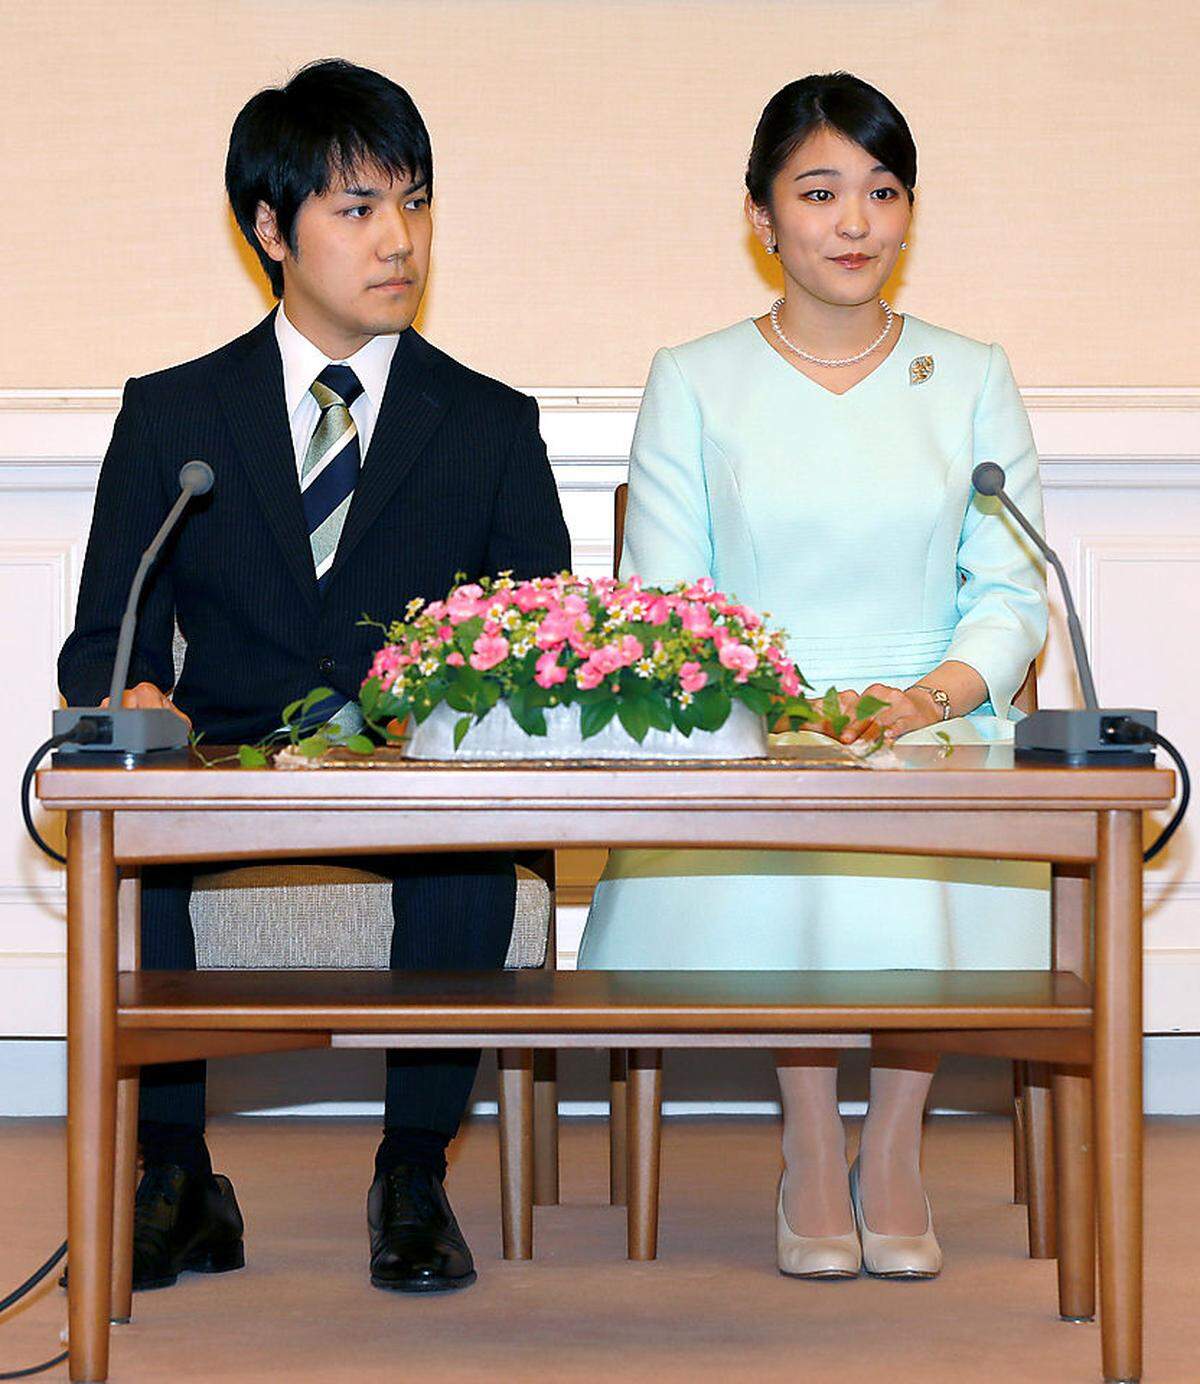 Im Gegenzug dafür darf die kaiserliche Prinzessin einen normalen japanischen Bürger heiraten, ihren früheren Studienkollegen Kei Komuro. Die Hochzeit findet am 4. November statt.